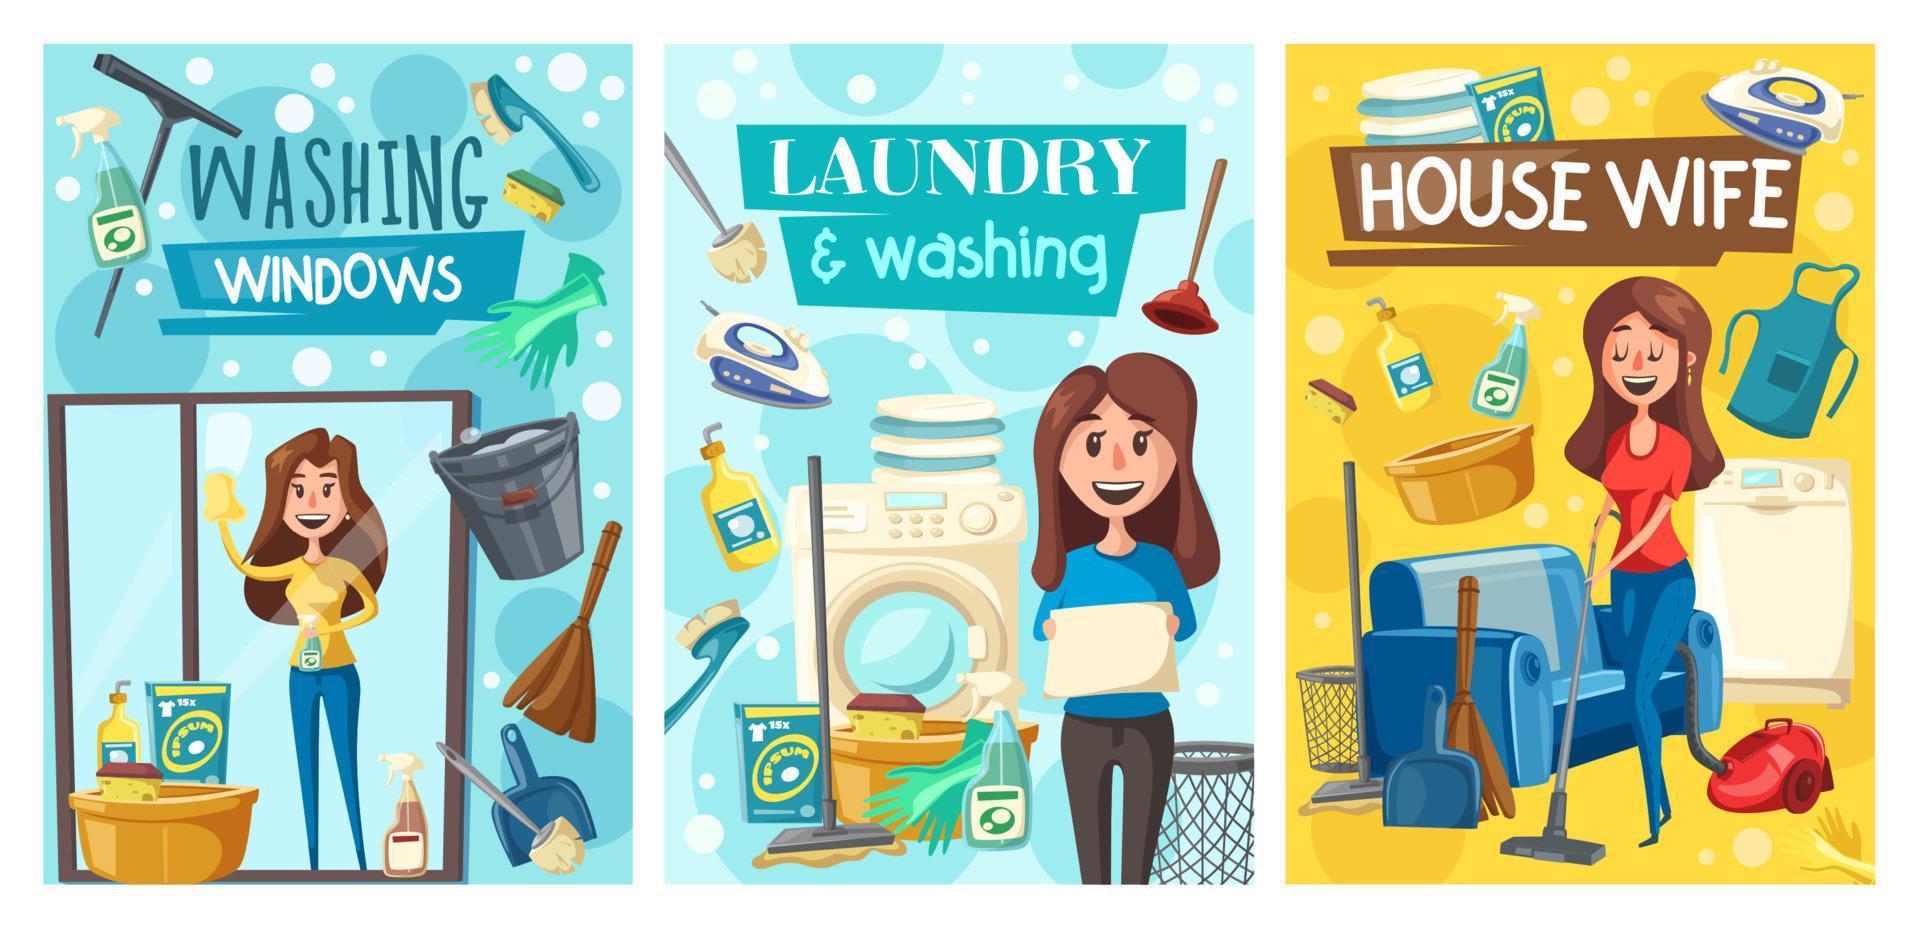 Hem rengöring service, hus tvätt och tvättning vektor